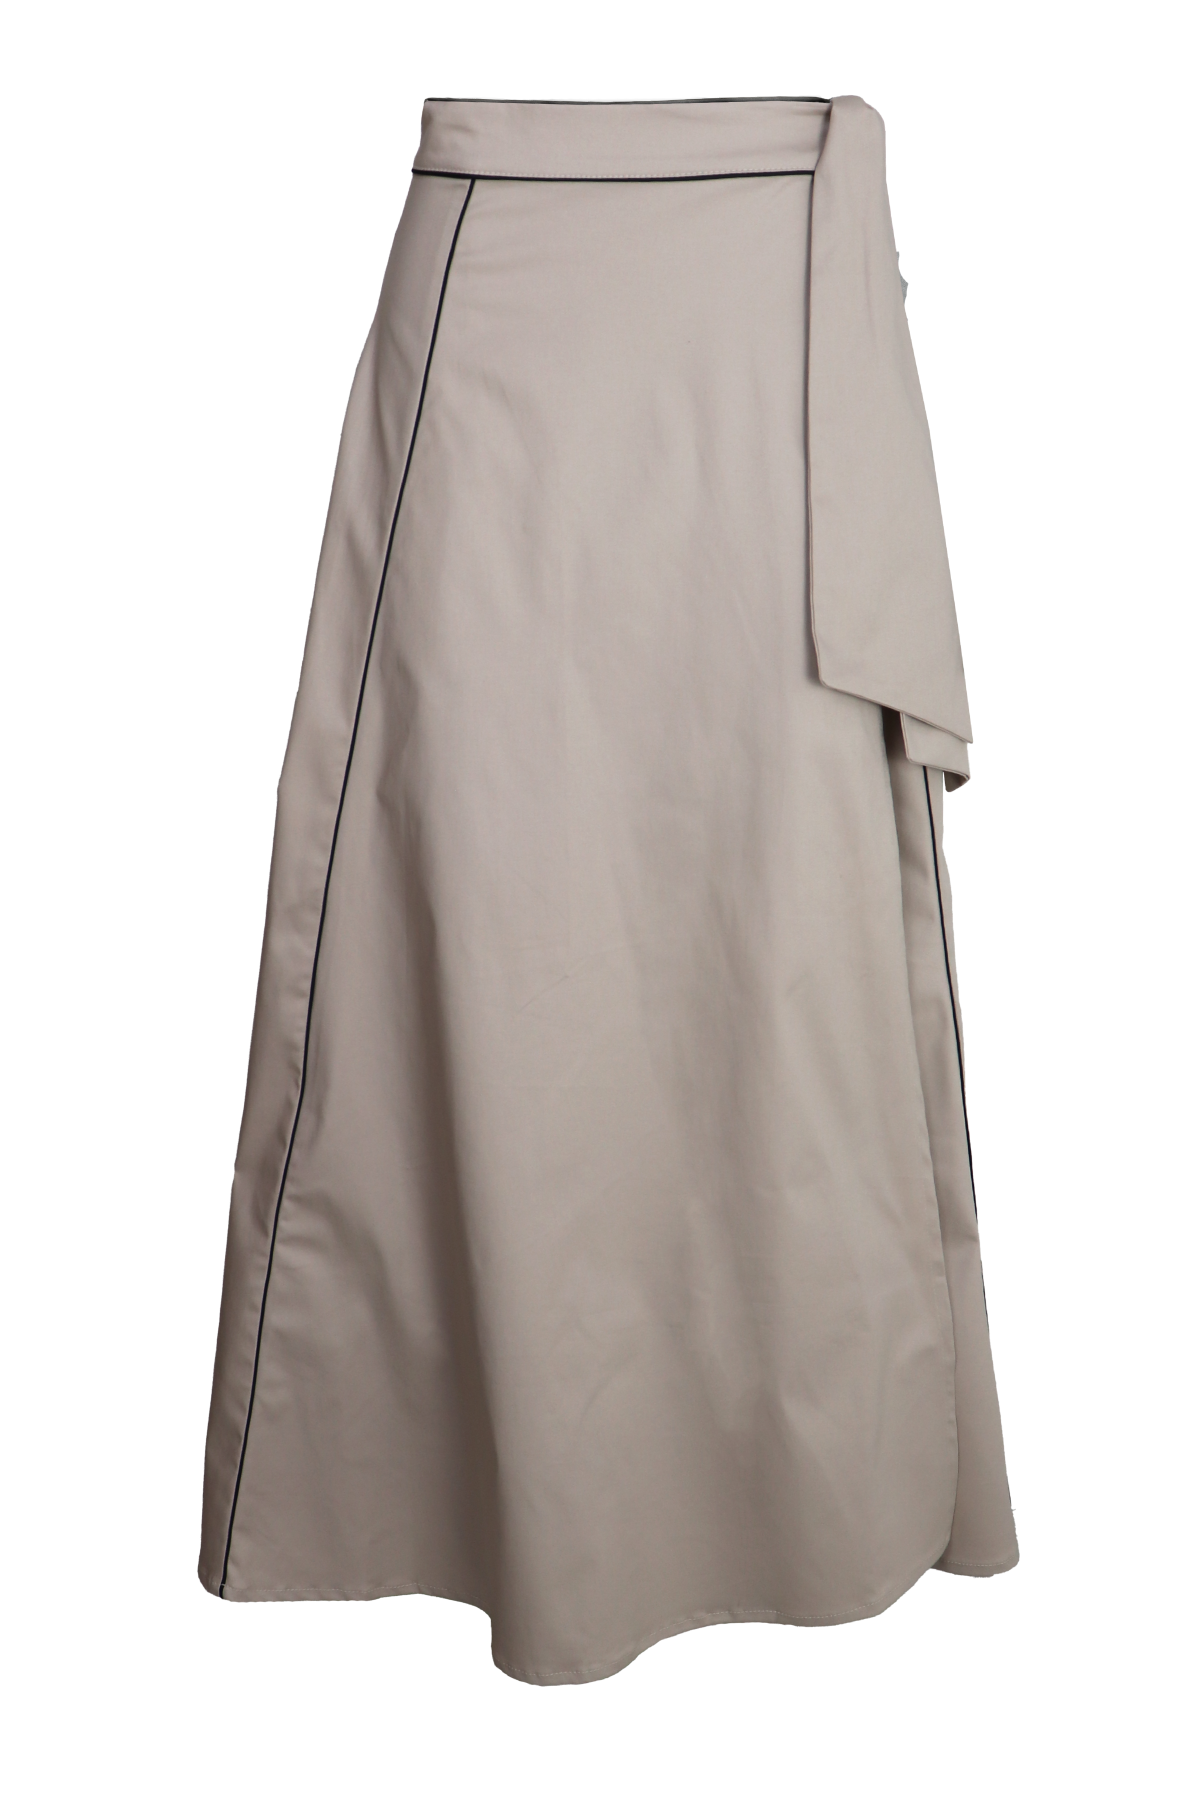 Hermosa falda larga con venas laterales color arena